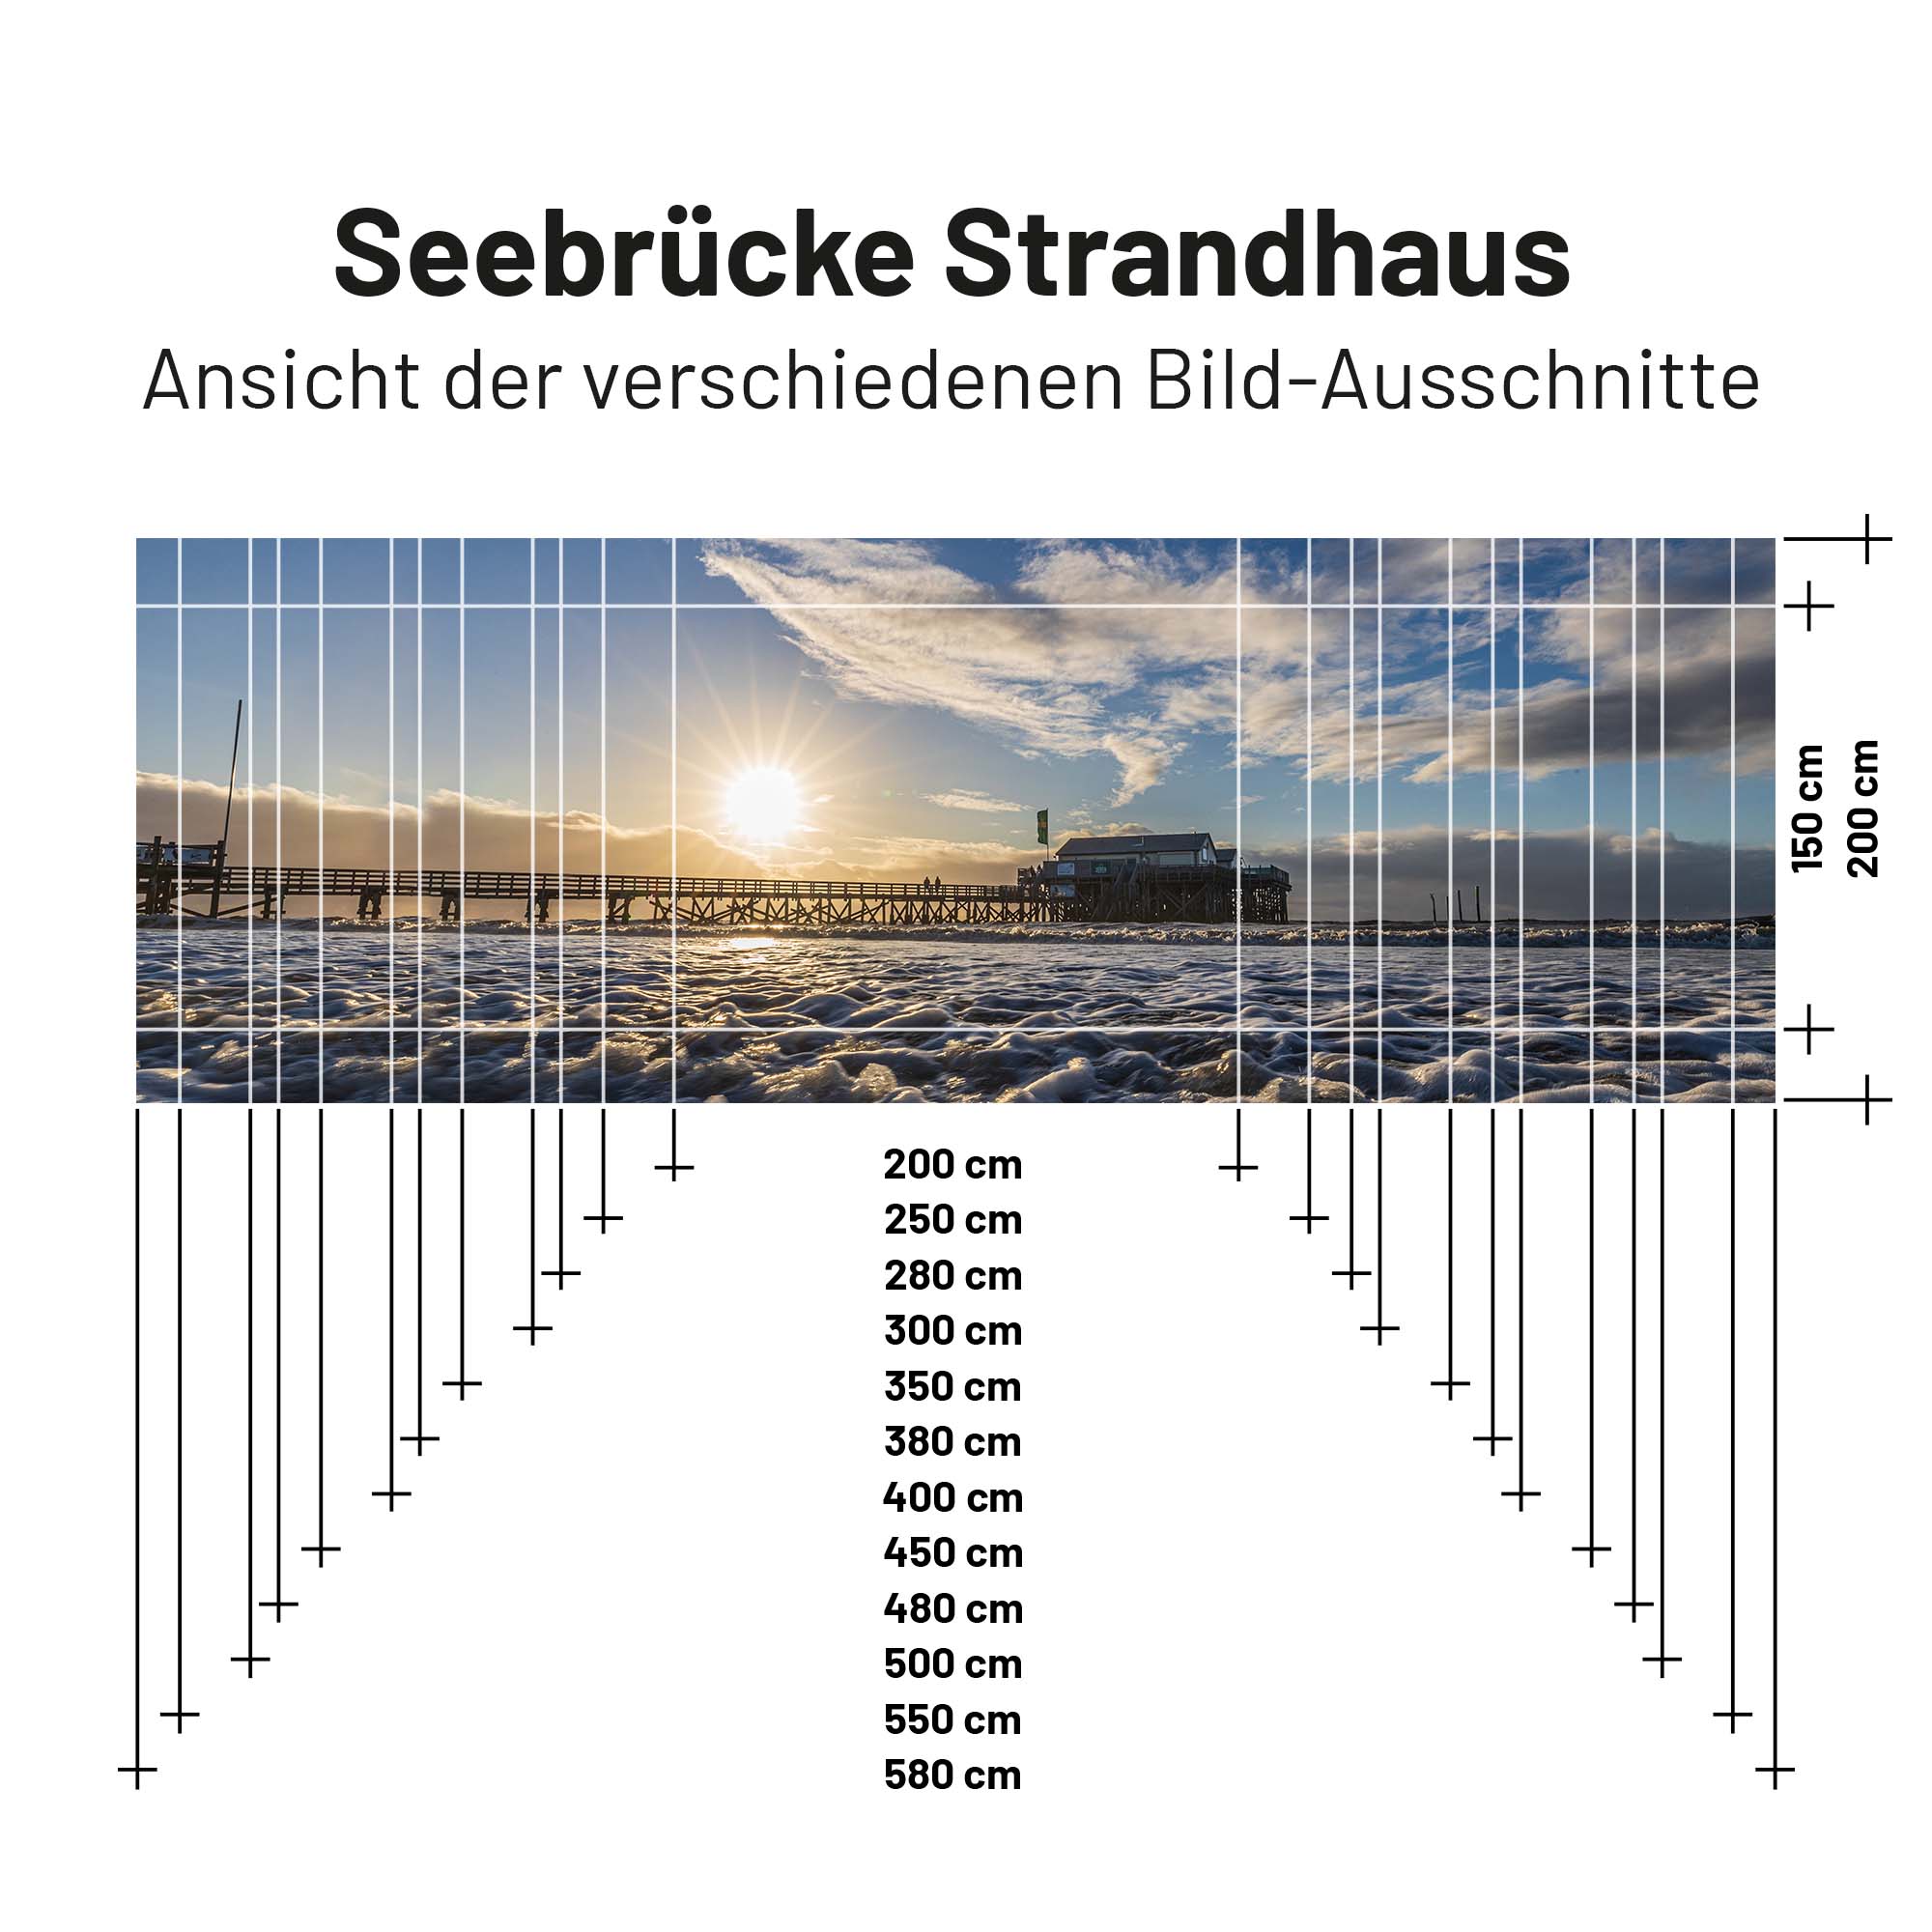 Textil Sonnensegel SEEBRÜCKE STRANDHAUS 200cm Hoch